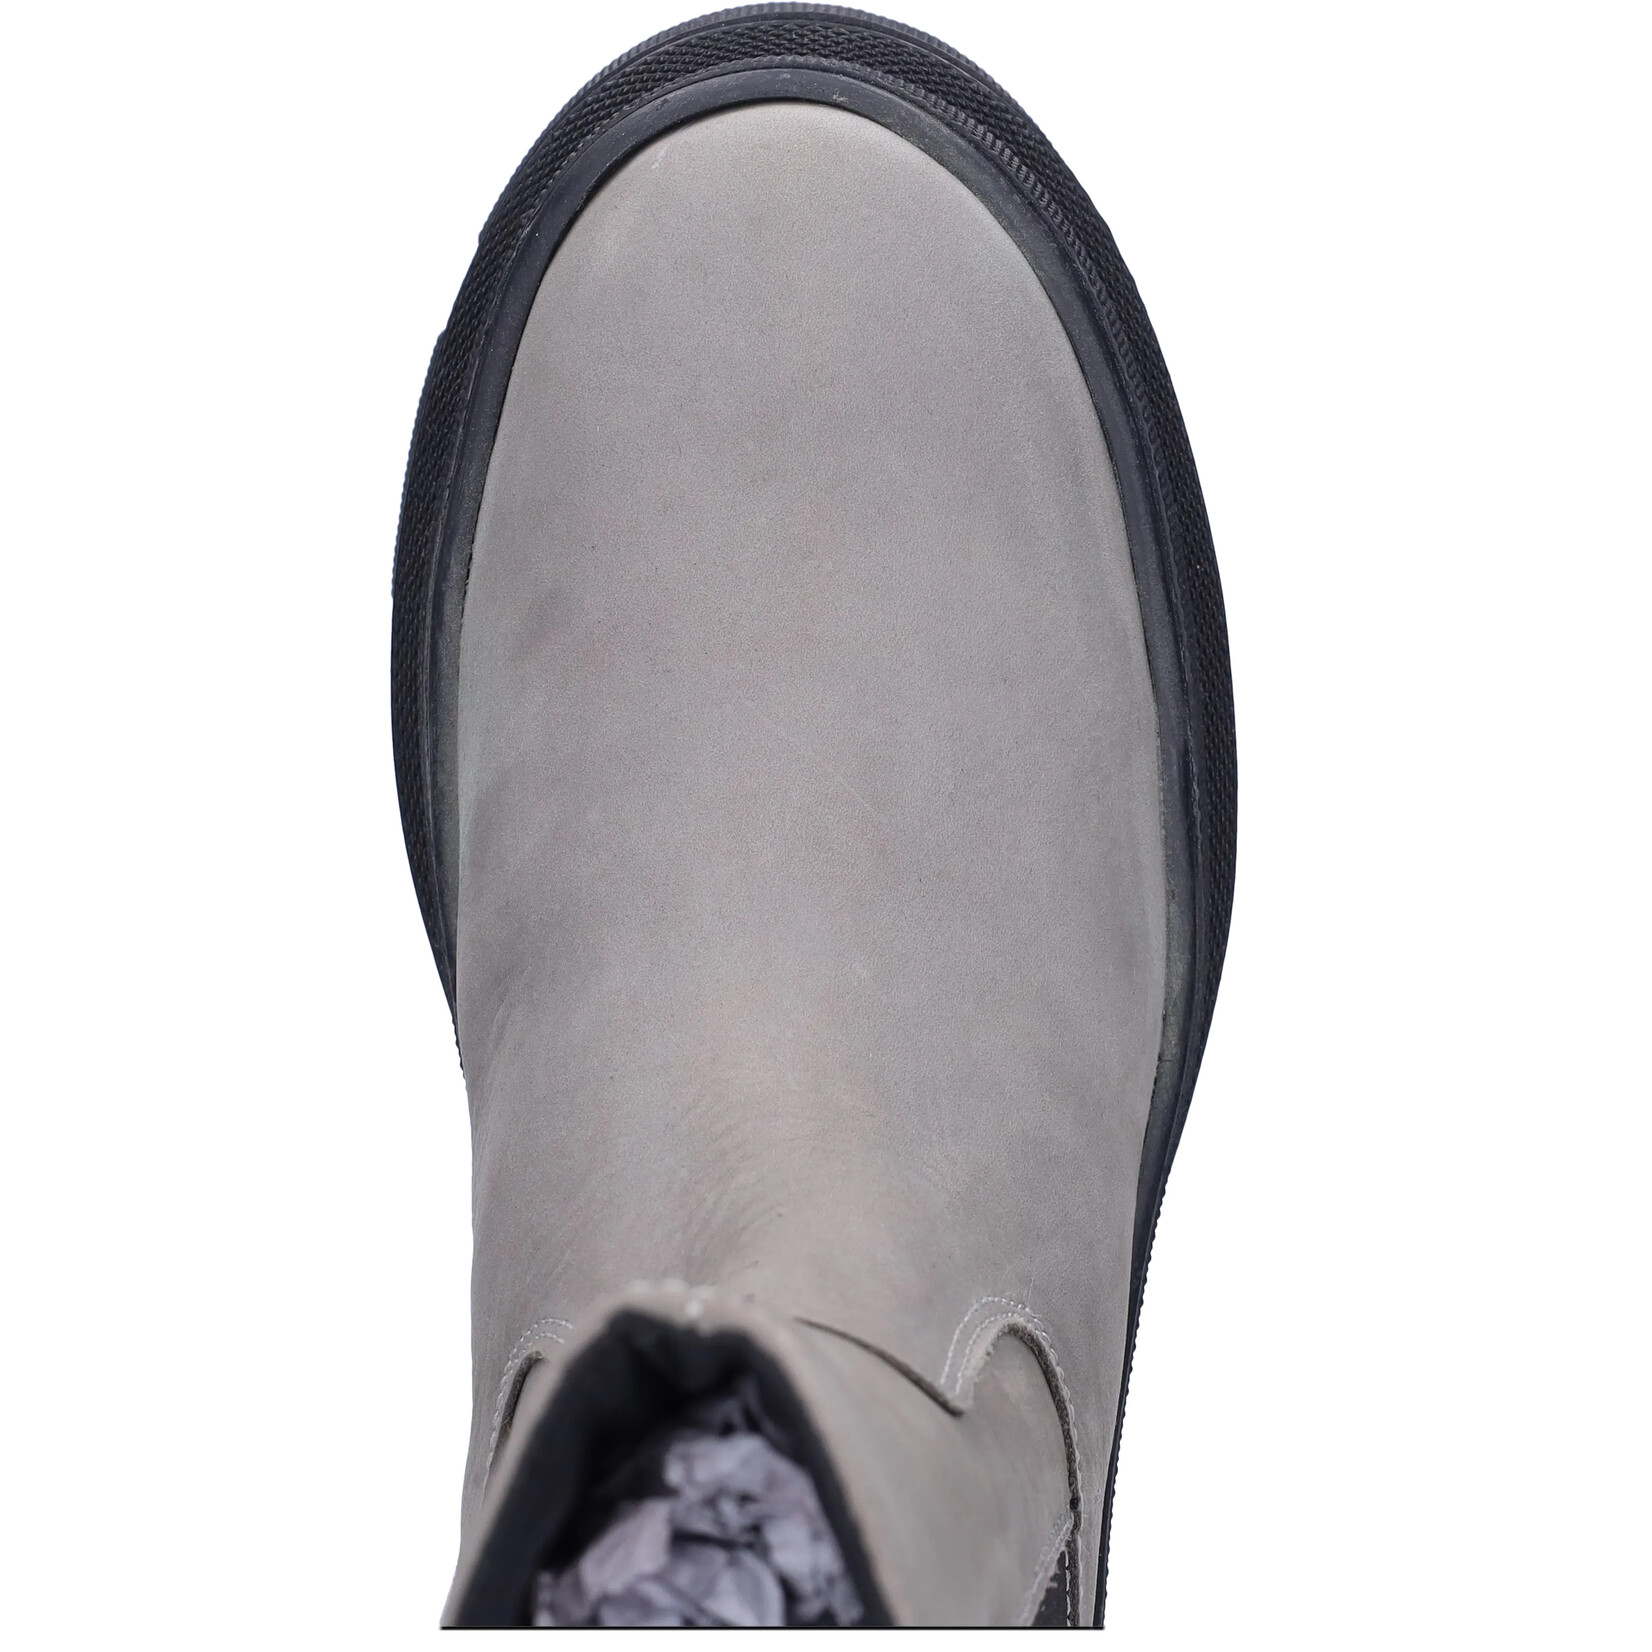 JJ Footwear Rockdale - Grau